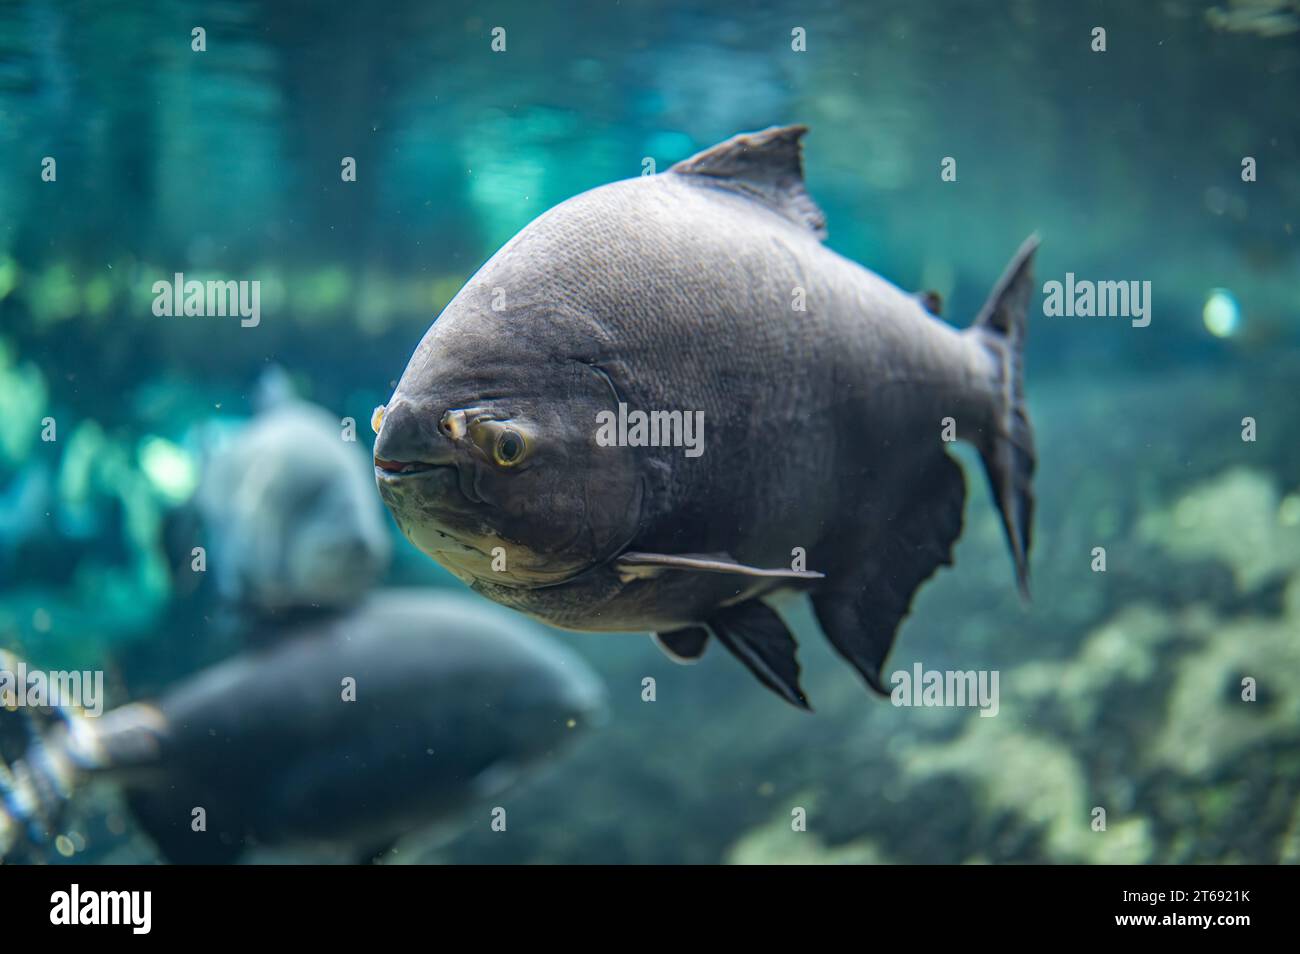 Ritratto di un pesce che nuota nell'acqua Foto Stock